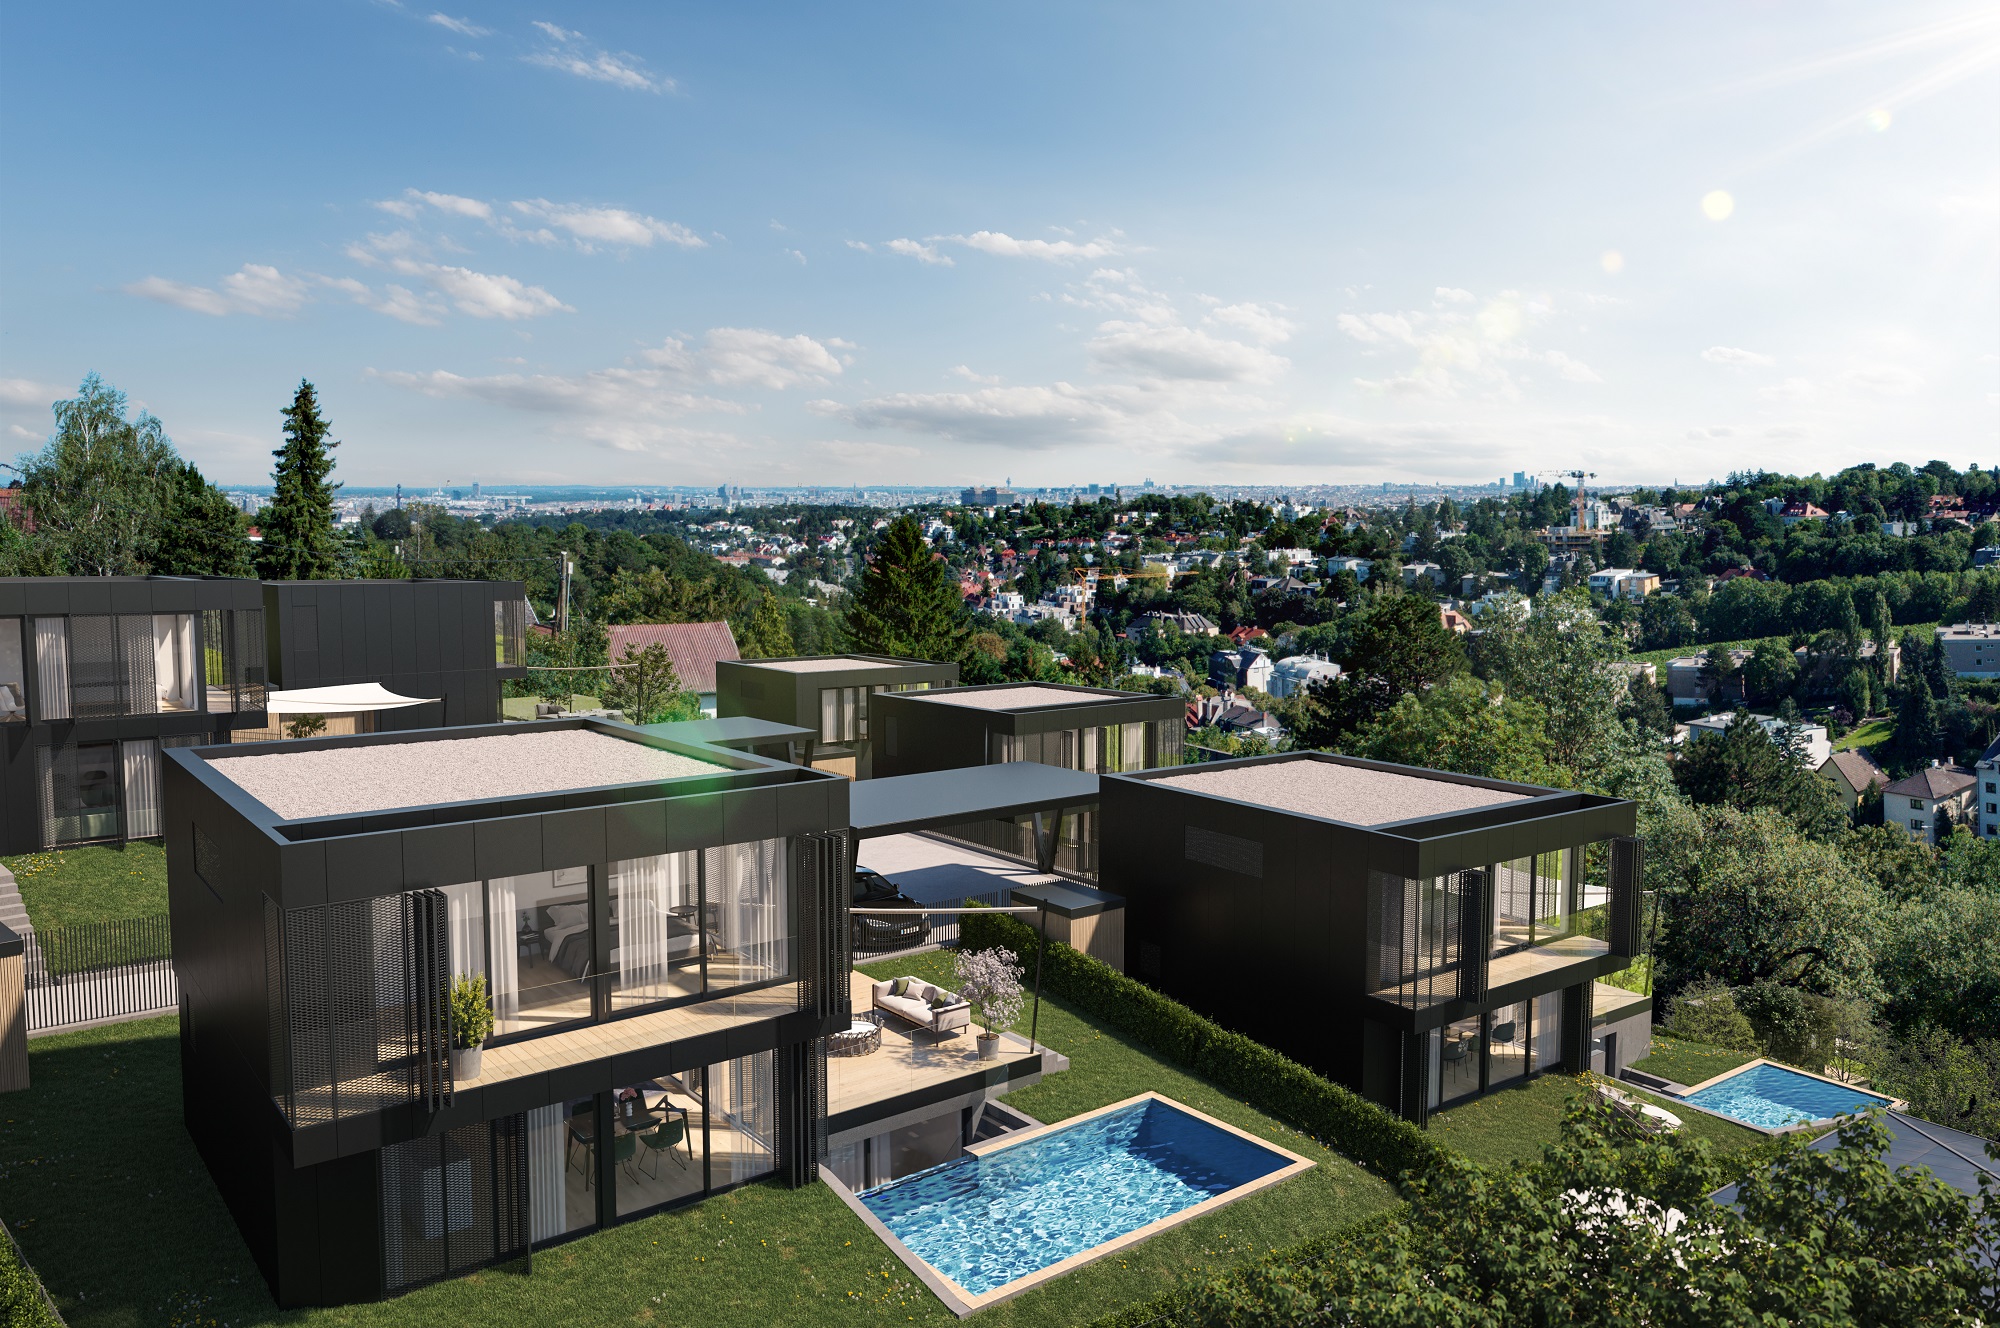 Das aktuelle Luxus-Neubauprojekt der 3SI Immogroup: 17 exklusive Villen werden bis Sommer 2023 am Döblinger Hackenberg errichtet. 